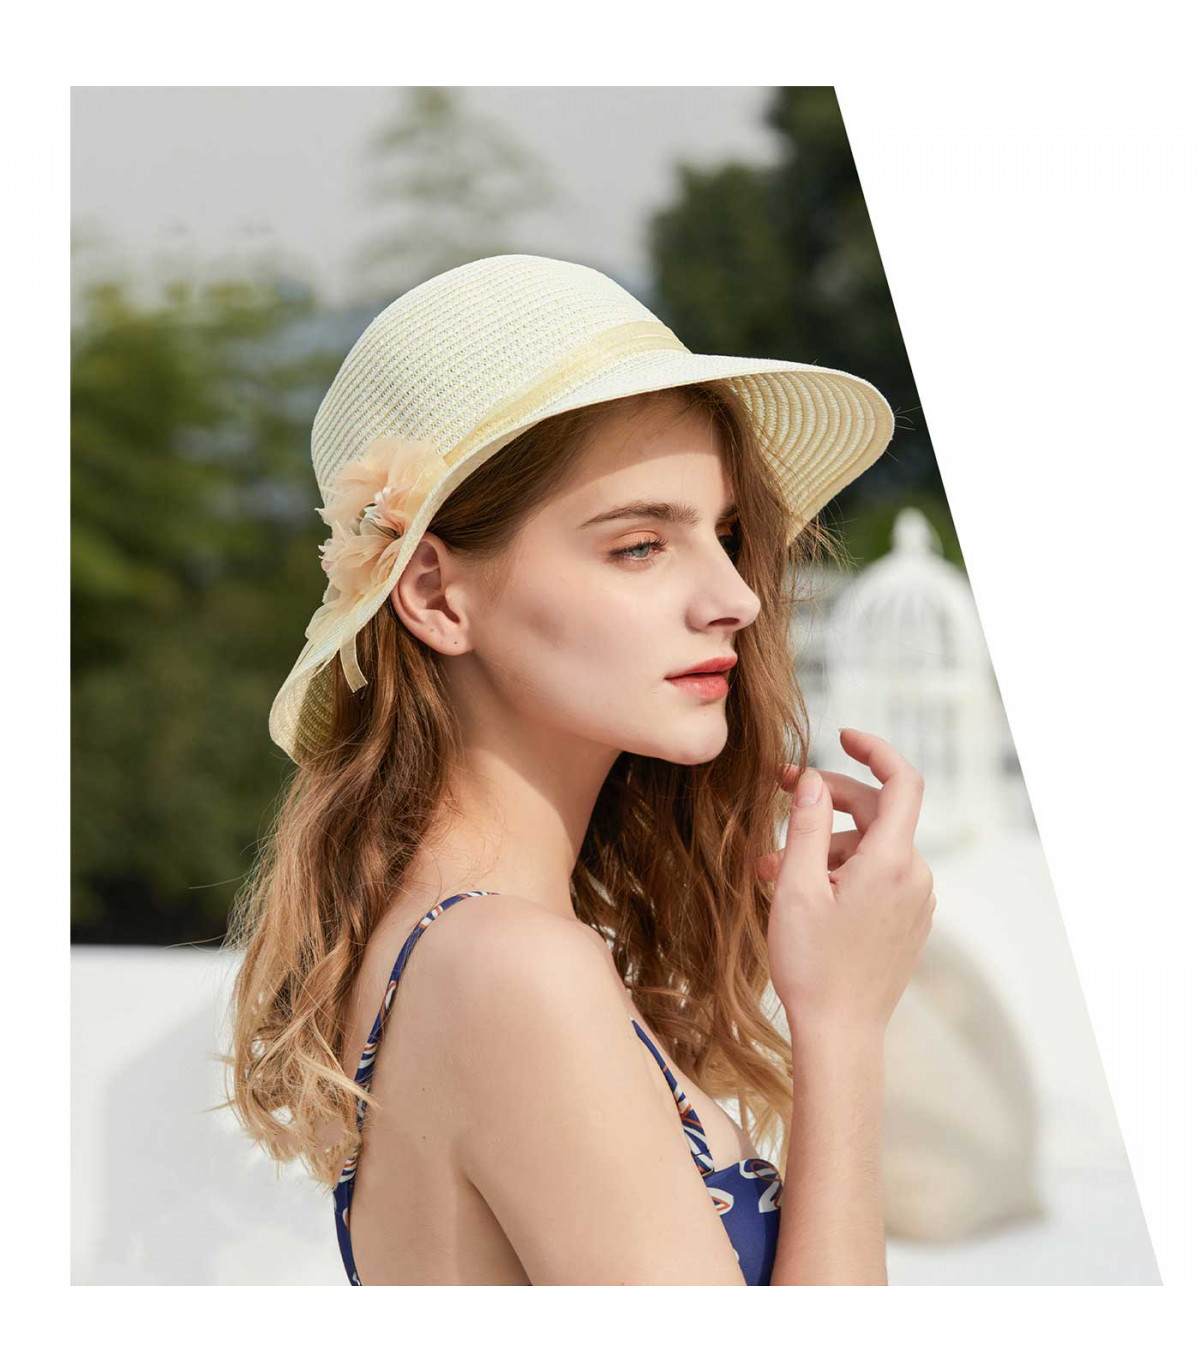 Tradineur - Sombrero de mujer con flor, paja flexible, ala ancha y de barbilla, protección solar, playa, piscina, aire libr